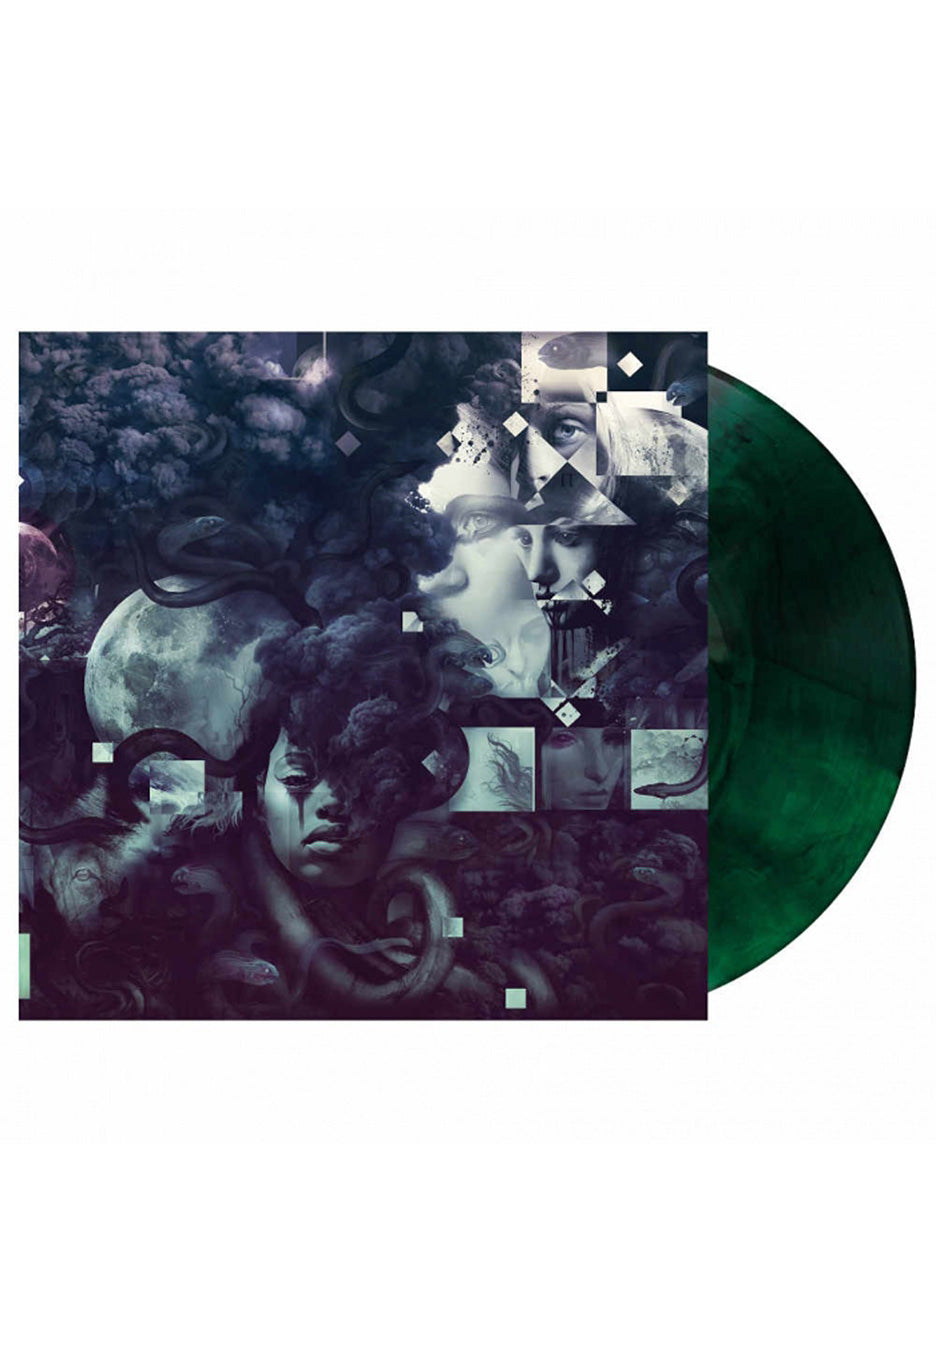 Vildhjarta - Thousands Of Evils (Forte) Transparent Green/Black - Marbled Vinyl